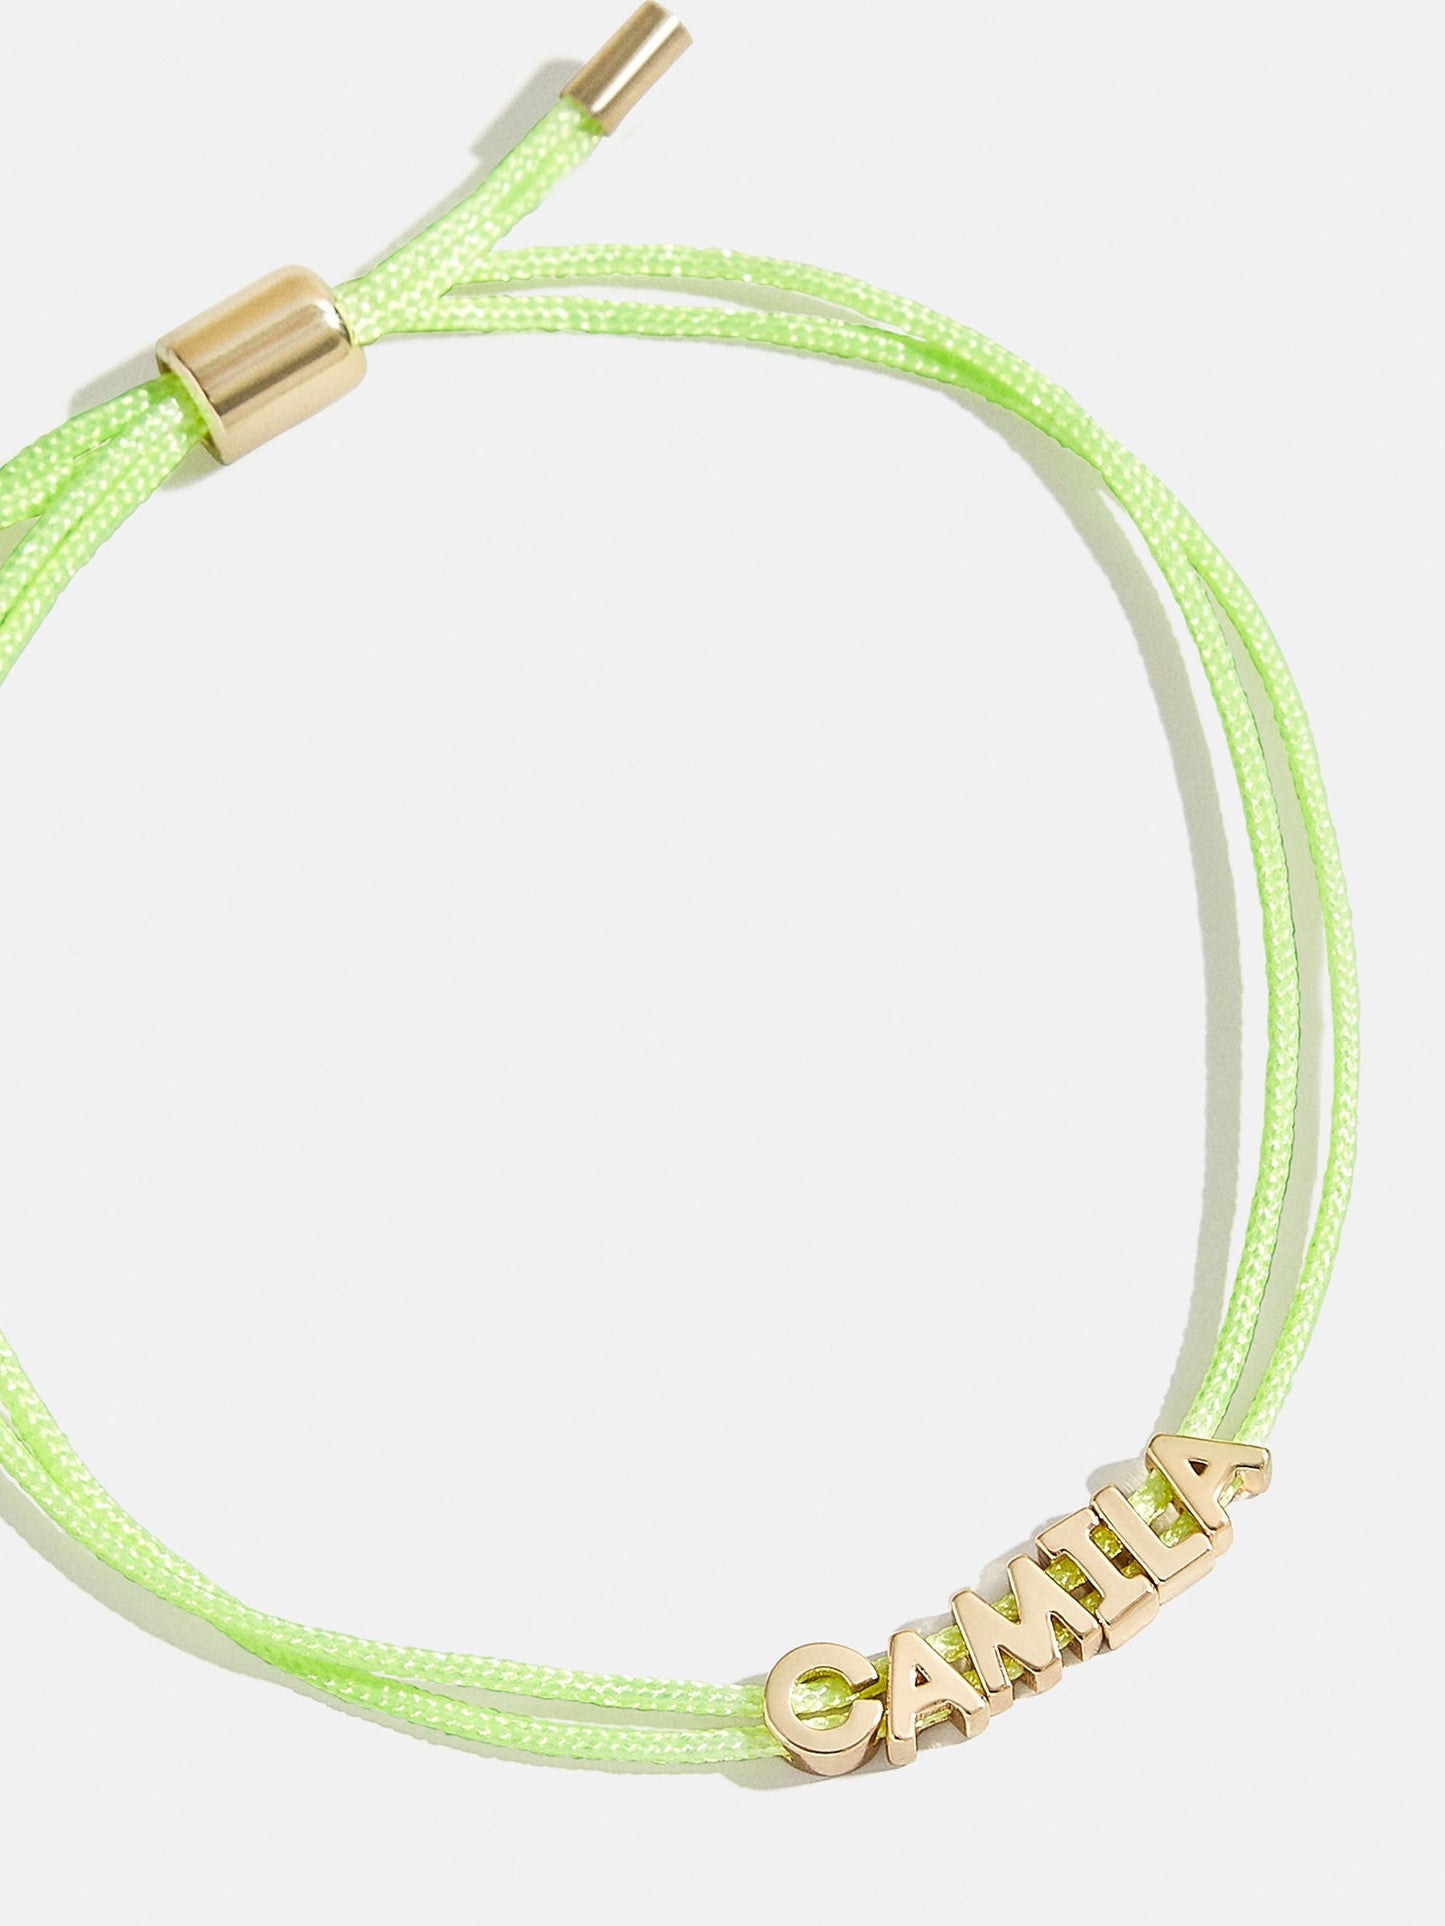 Custom Cord Bracelet - Lime